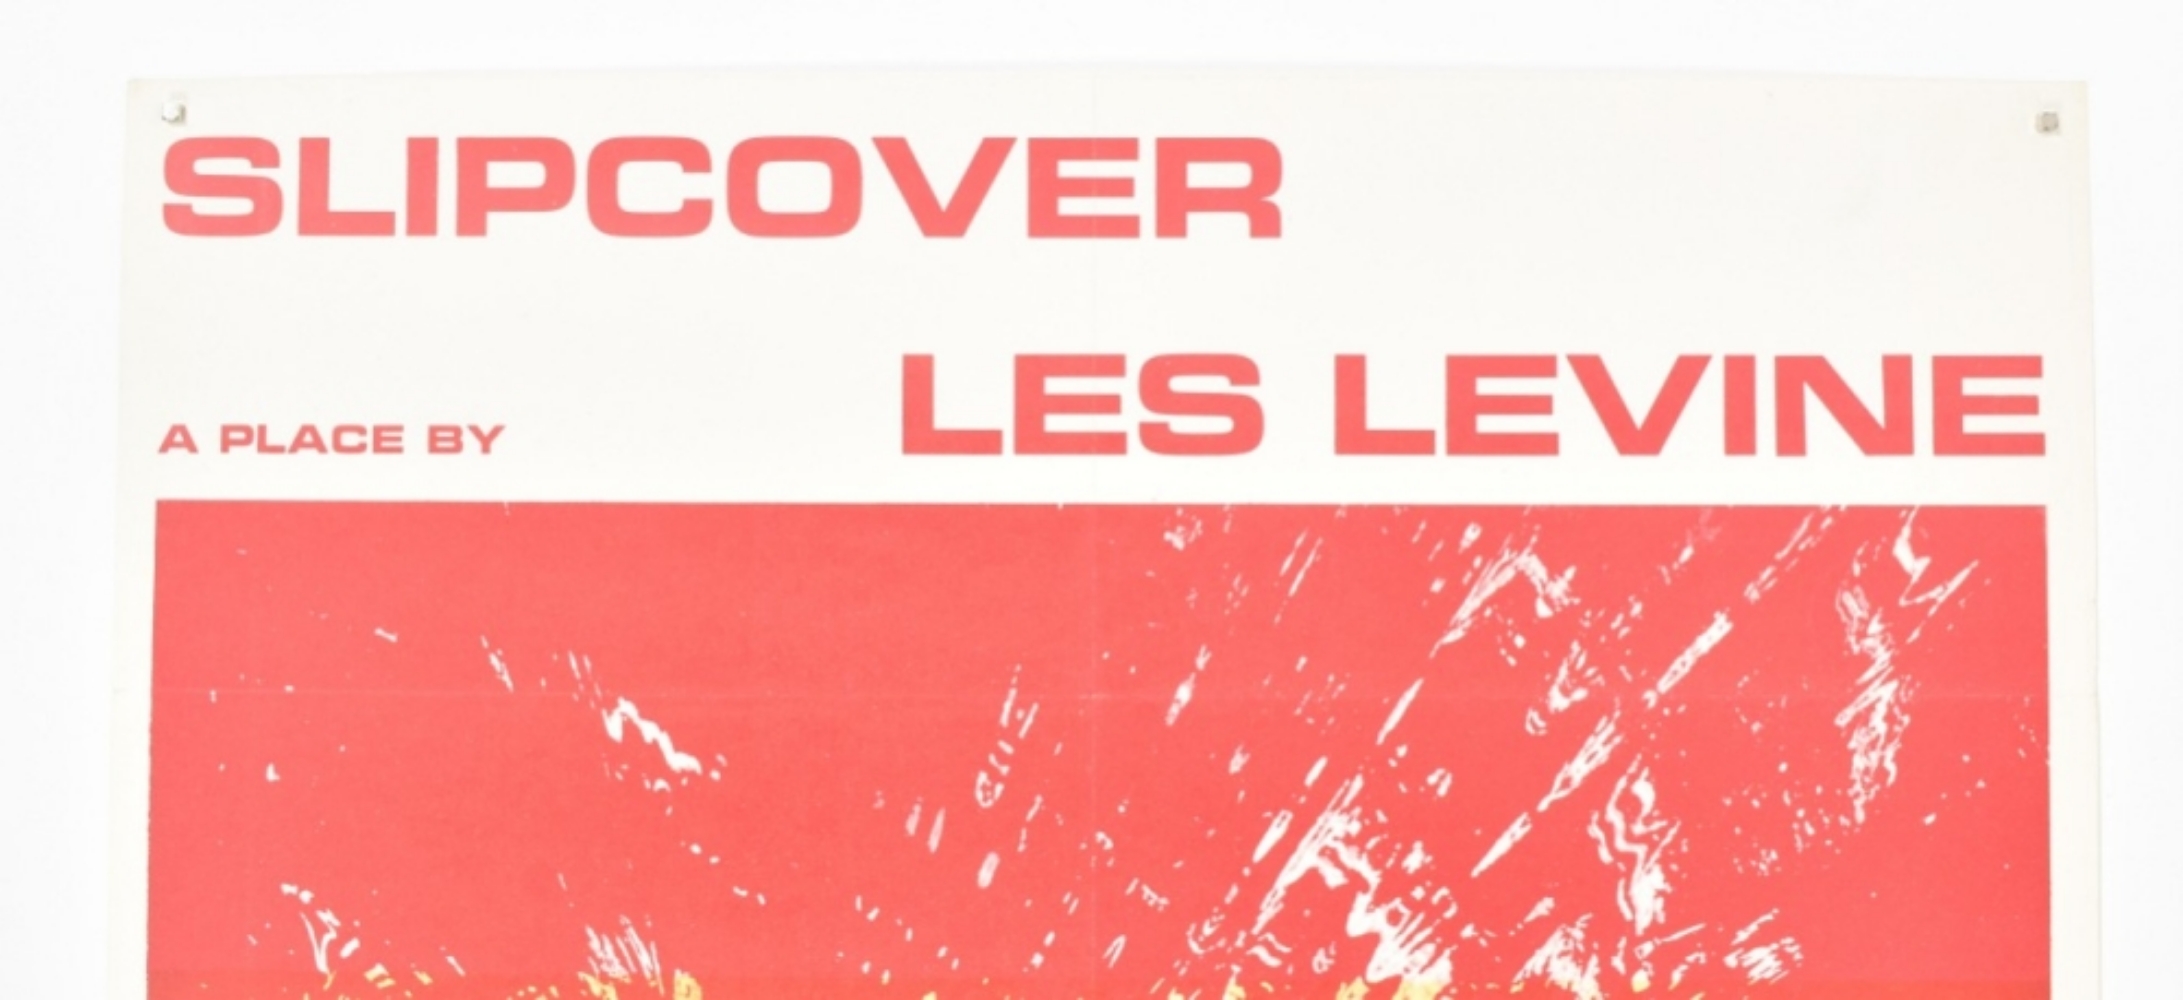 [Ephemera] Les Levine, Slipcover a place by Les Levine - Image 2 of 5